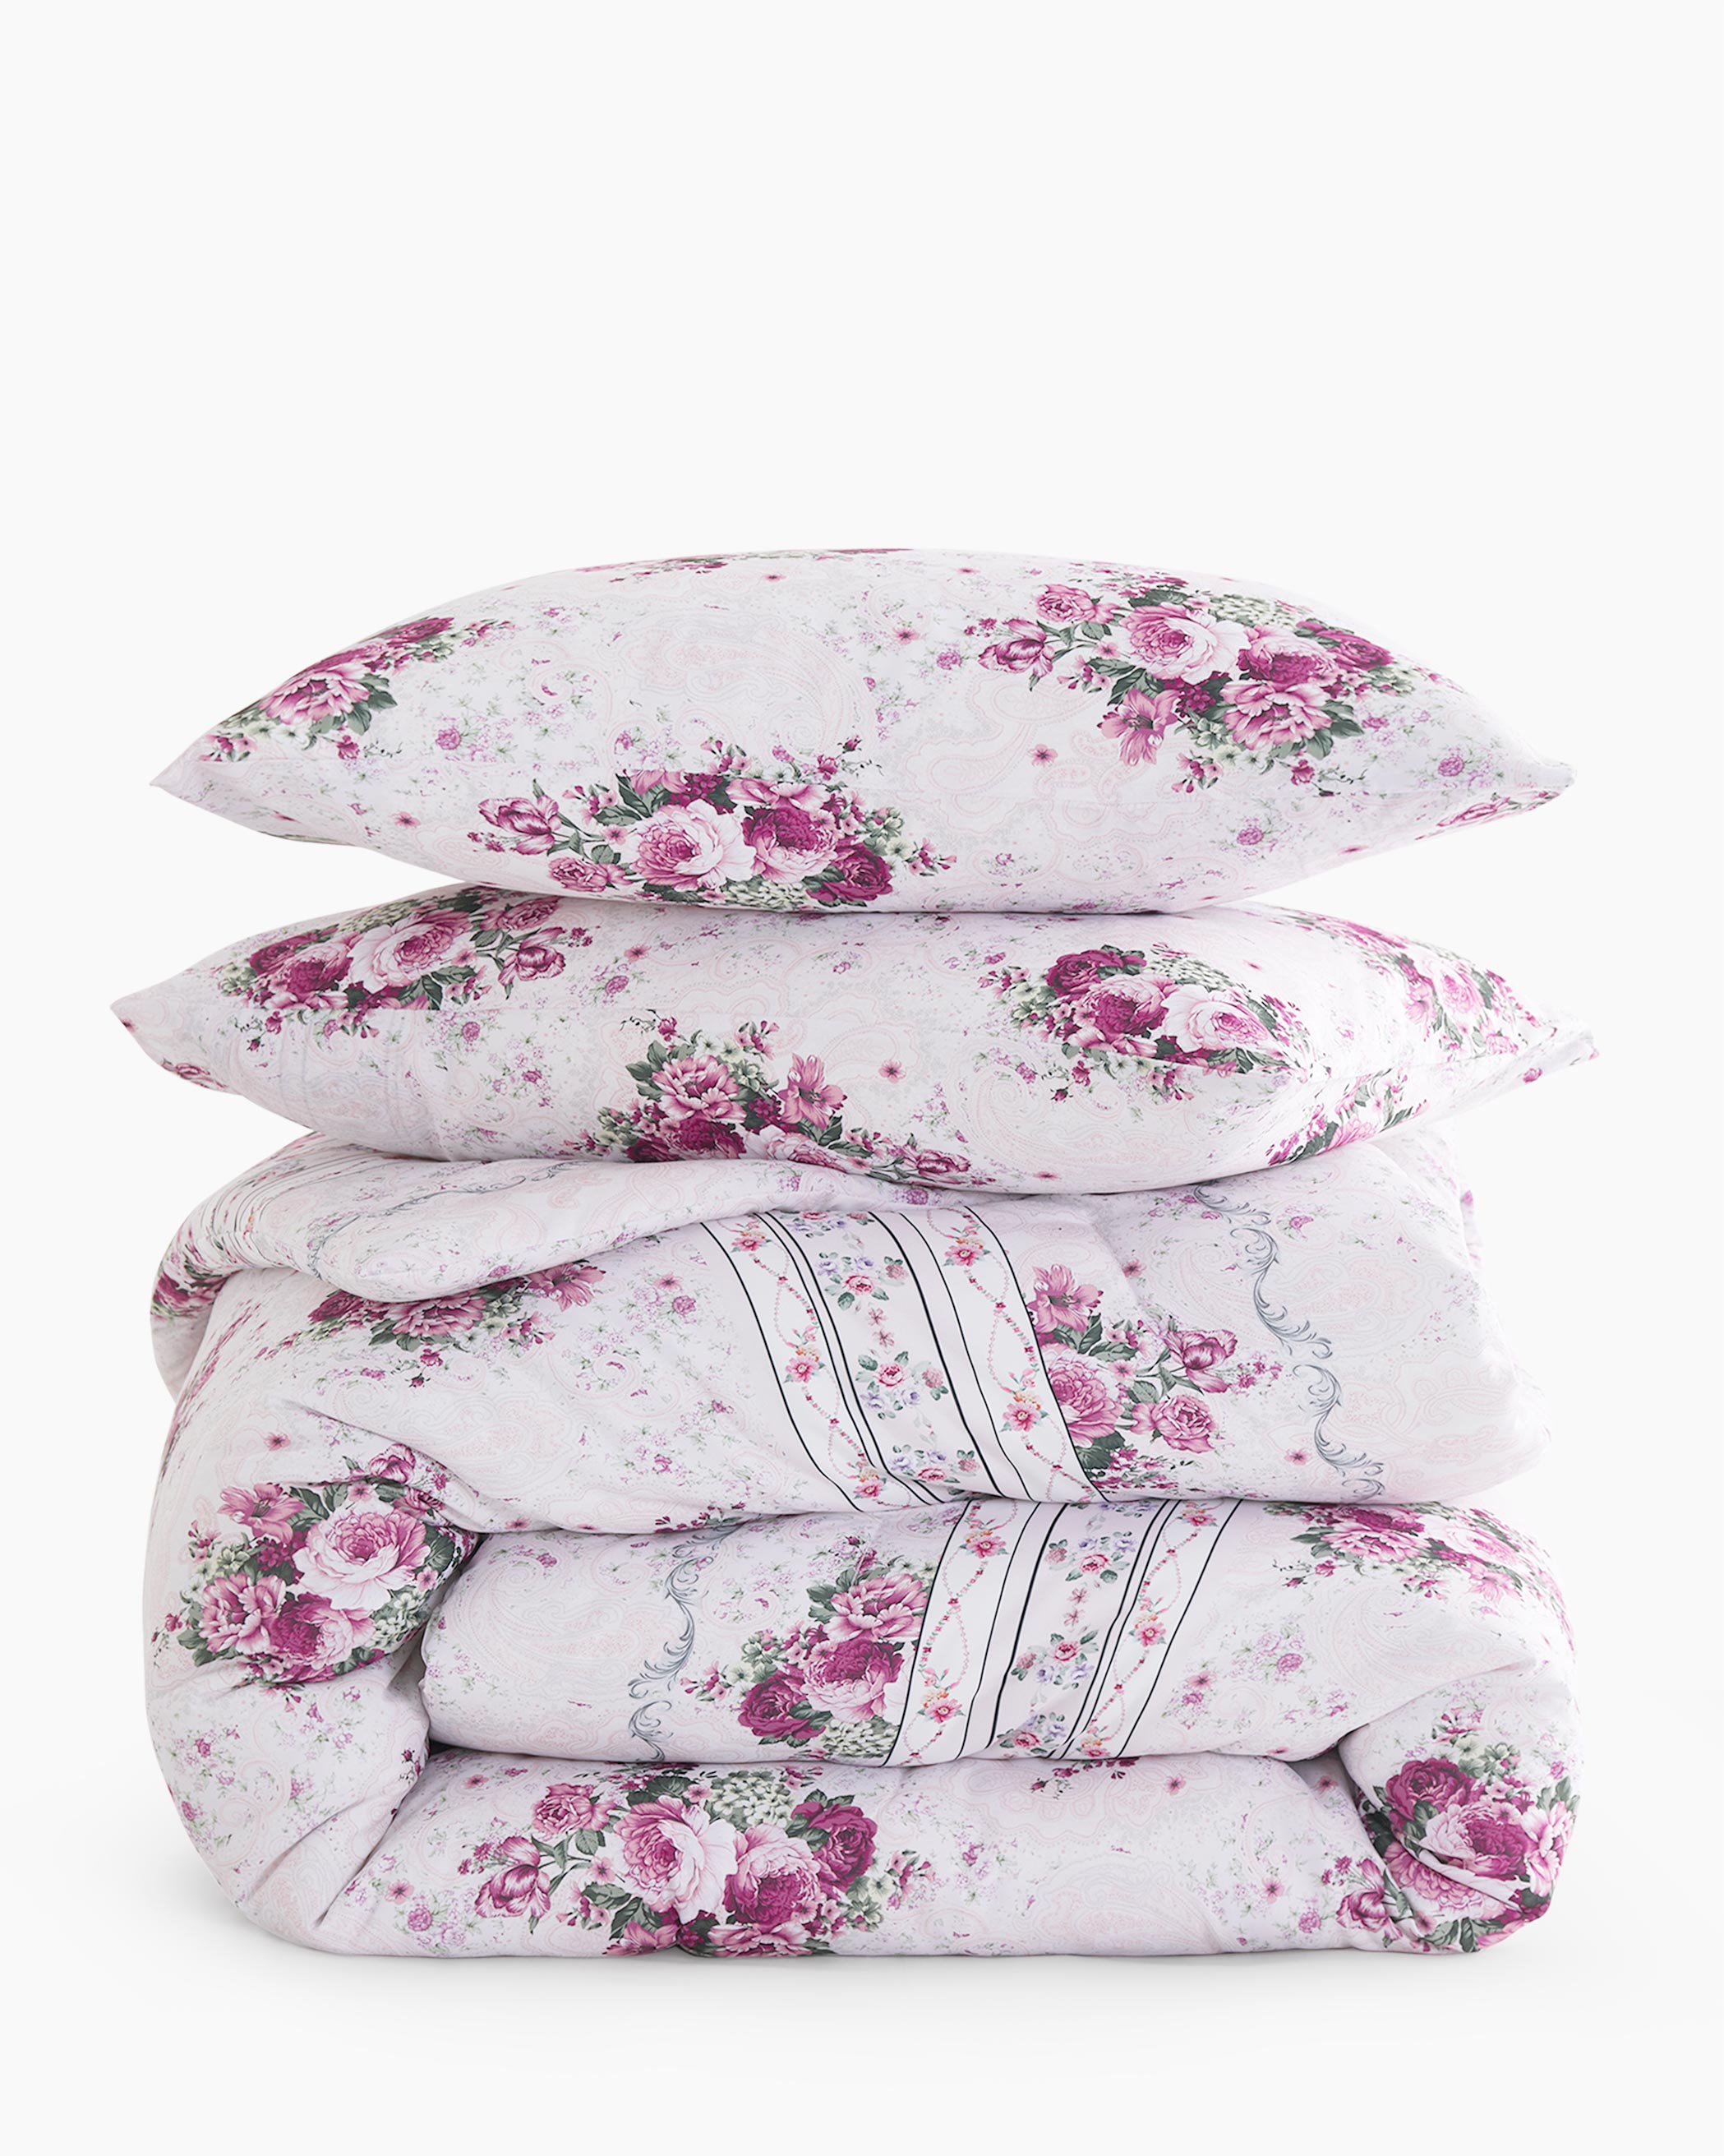 Pink Cottage Floral Microfiber Comforter Set